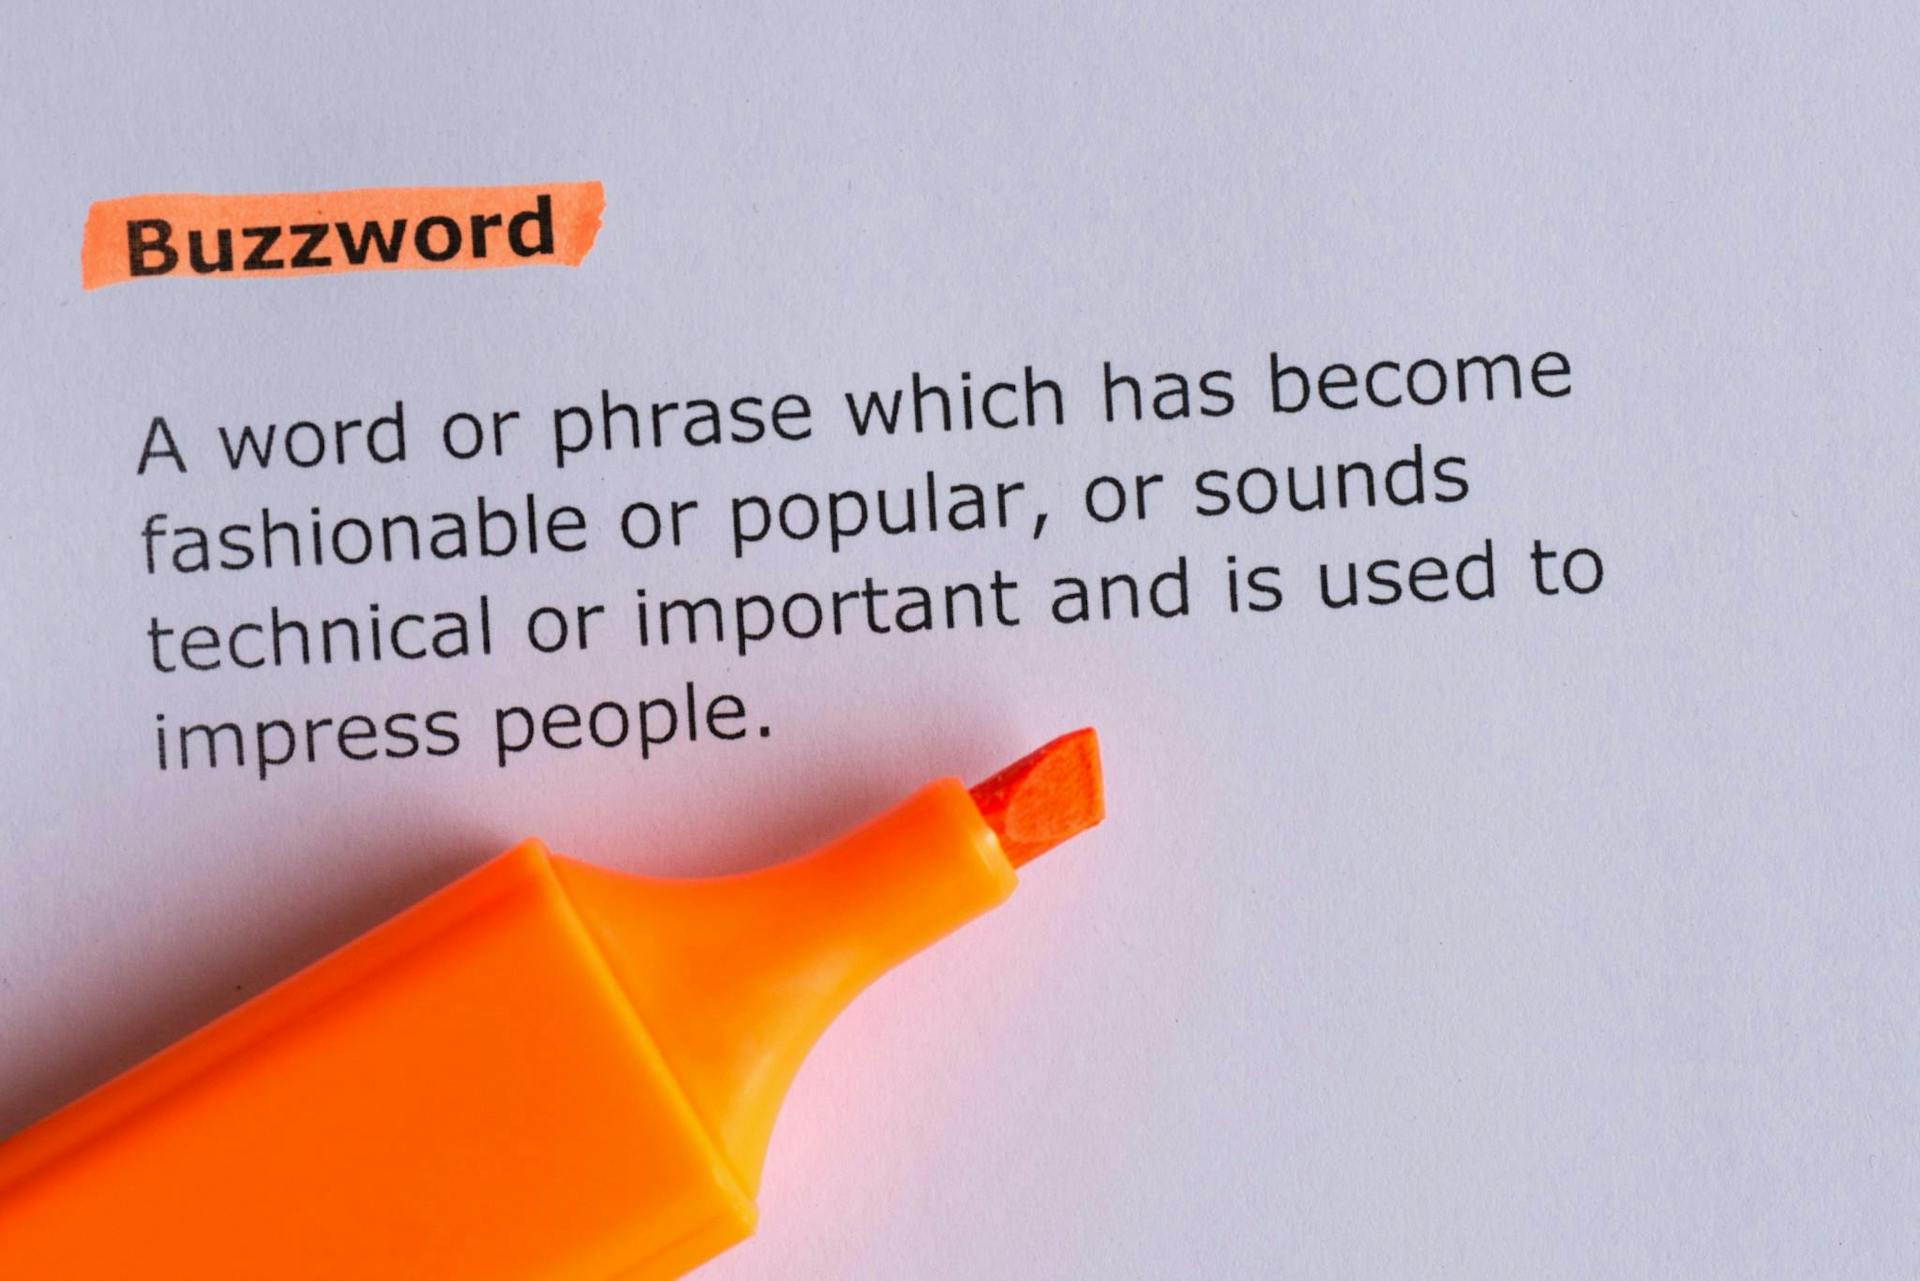 Orangener Textmarker hat das Wort Buzzword markiert mit Definition darunter